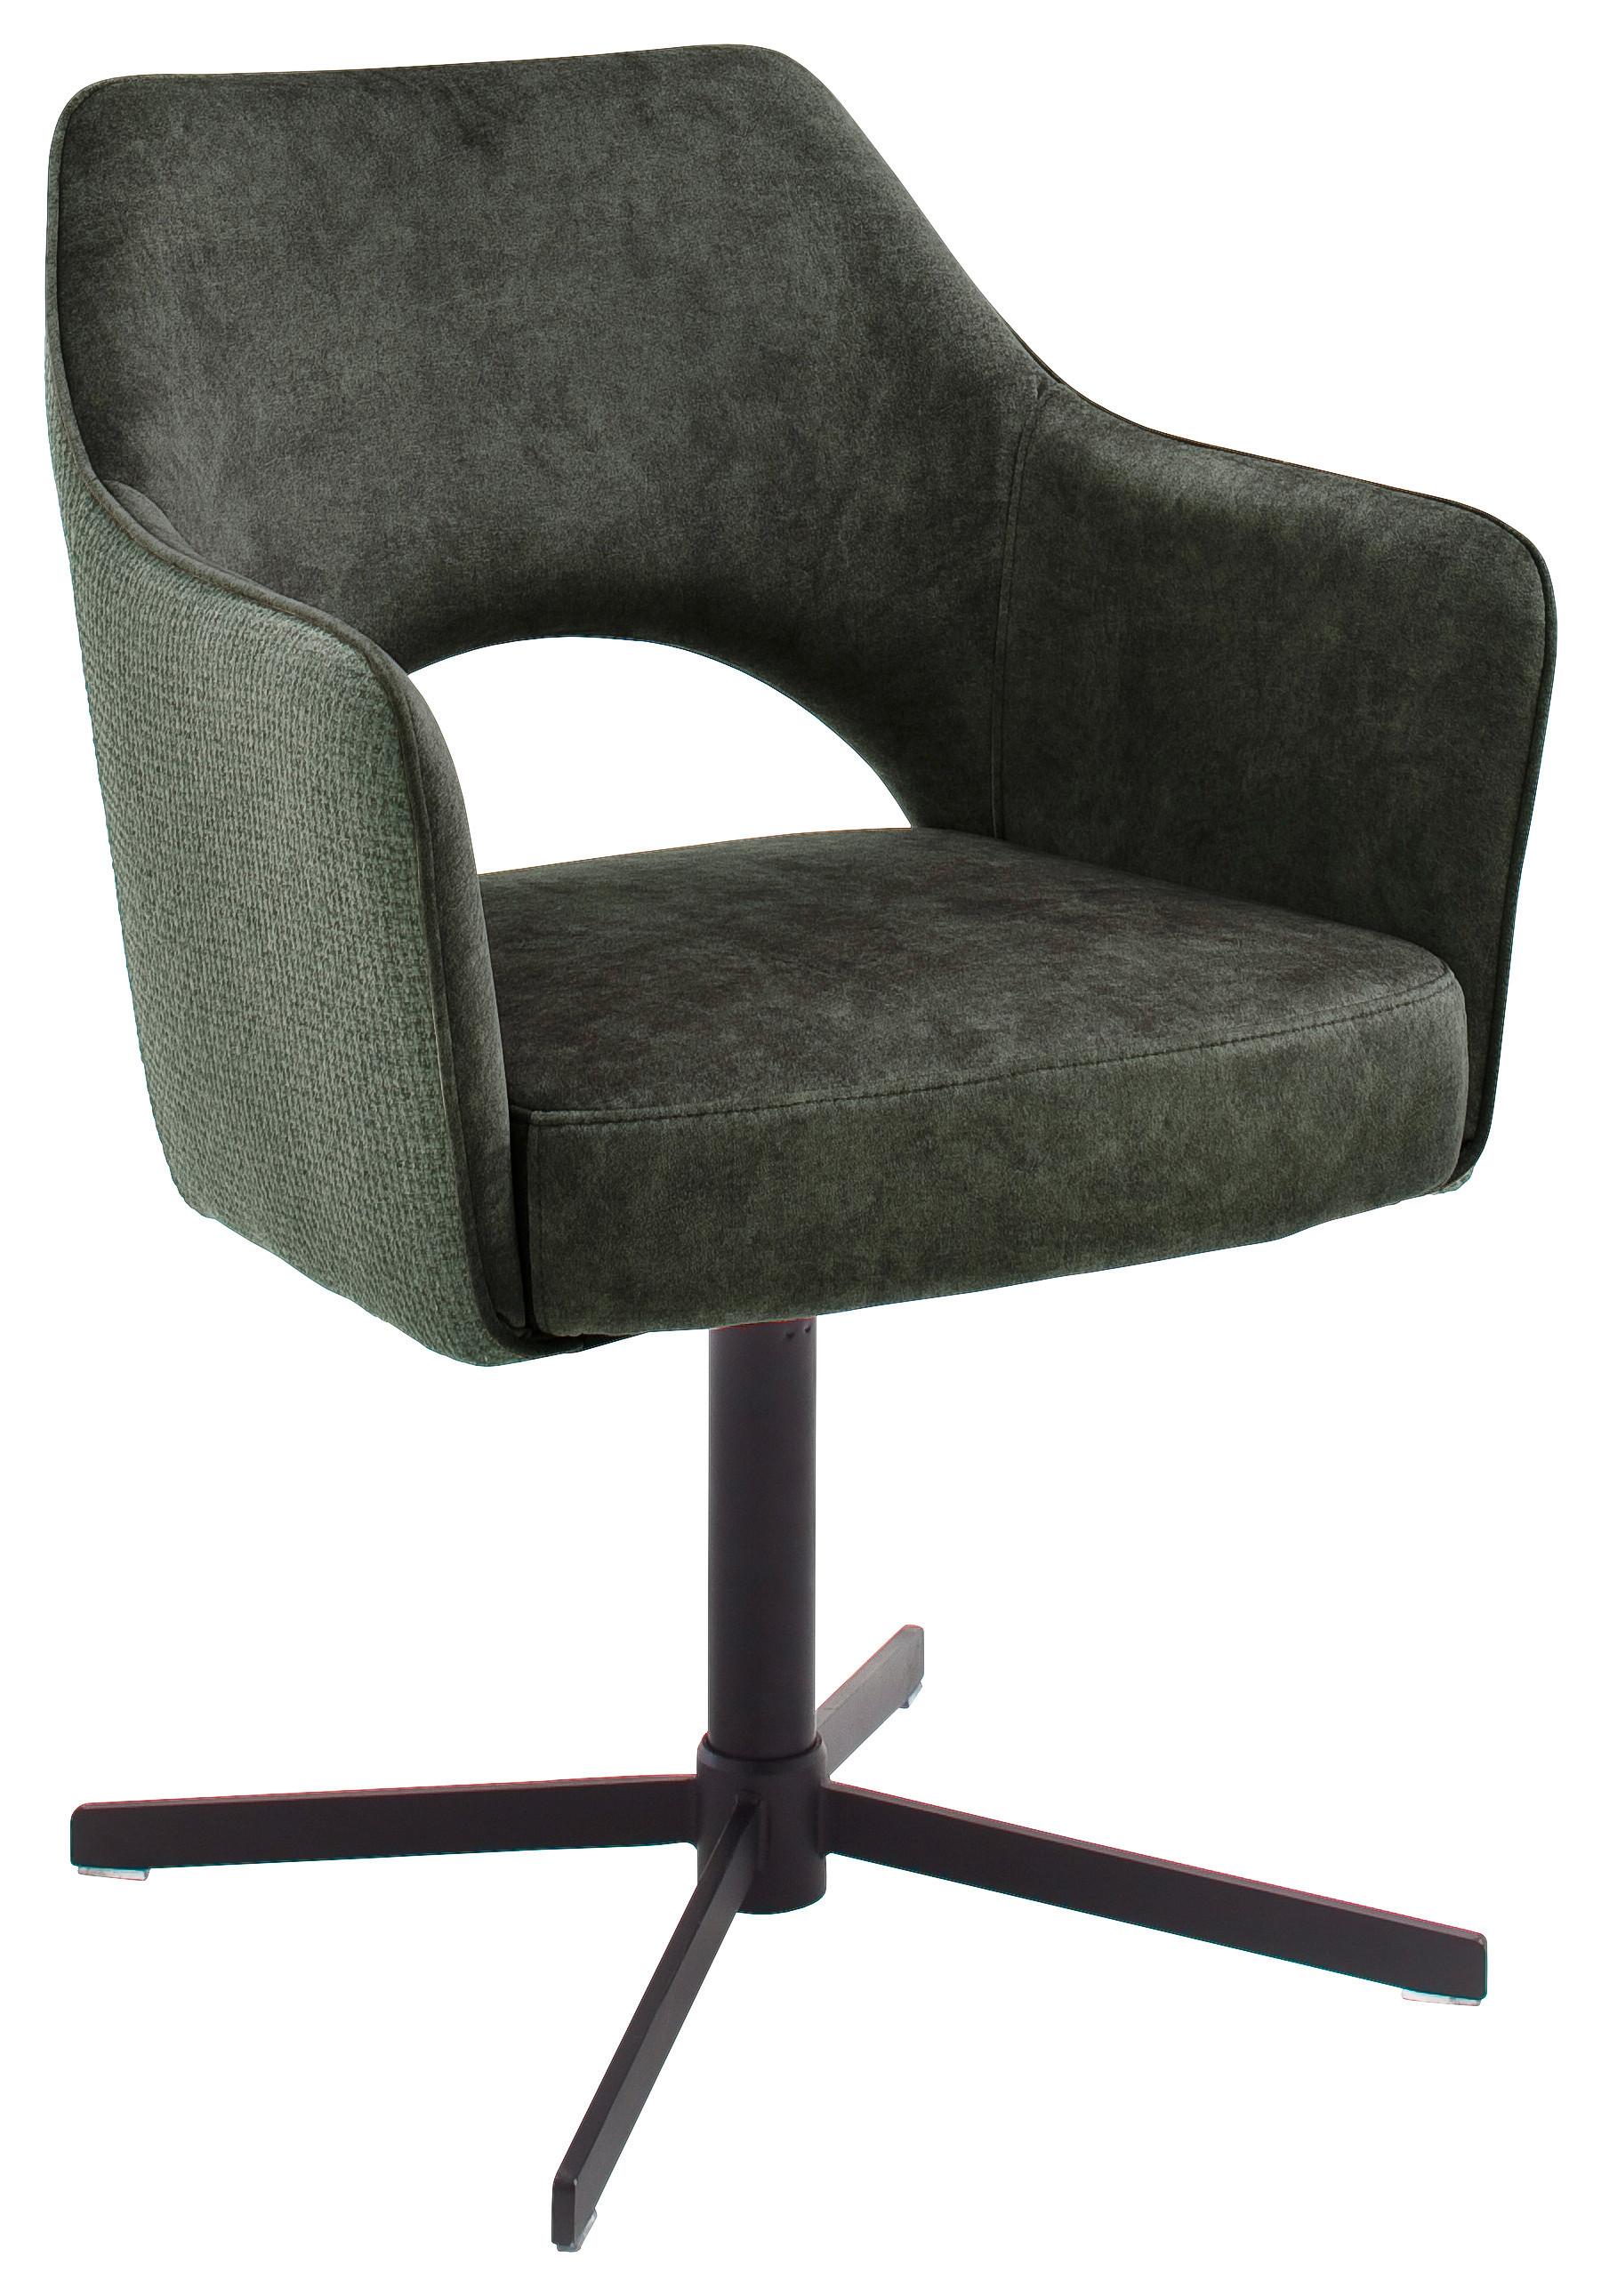 Židle S Područkami Valletta - černá/olivově zelená, Konvenční, kov/textil (61/85/60cm) - Based